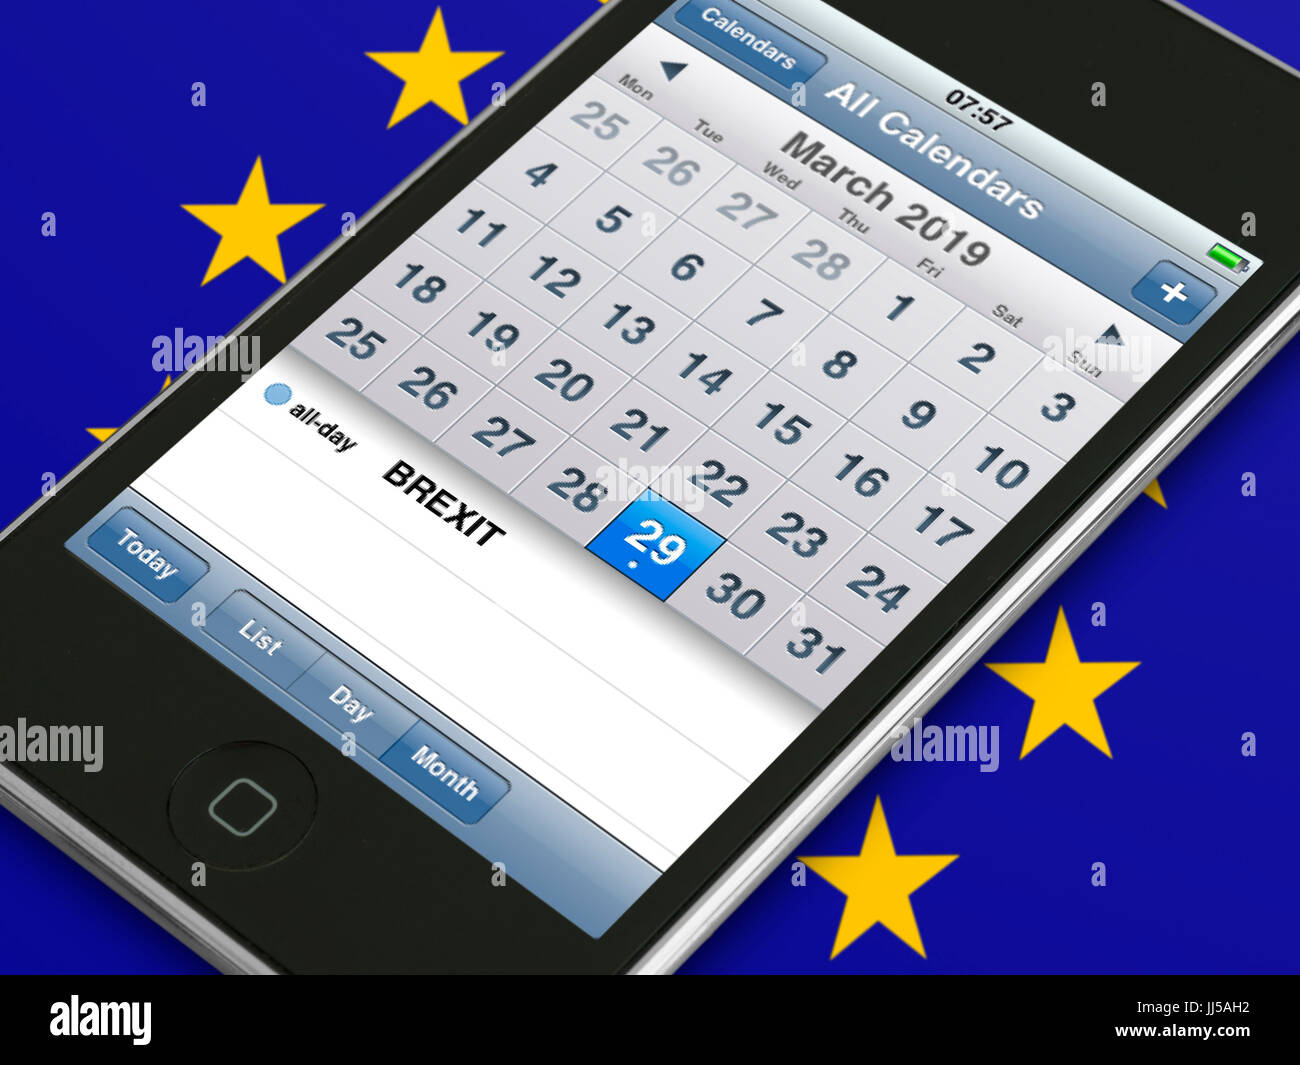 Dispositivo de telefonía móvil que muestra el calendario de eventos diario Brexit fecha cuando el Reino Unido se debe dejar a la UE La Unión Europea ("día de la independencia") Foto de stock